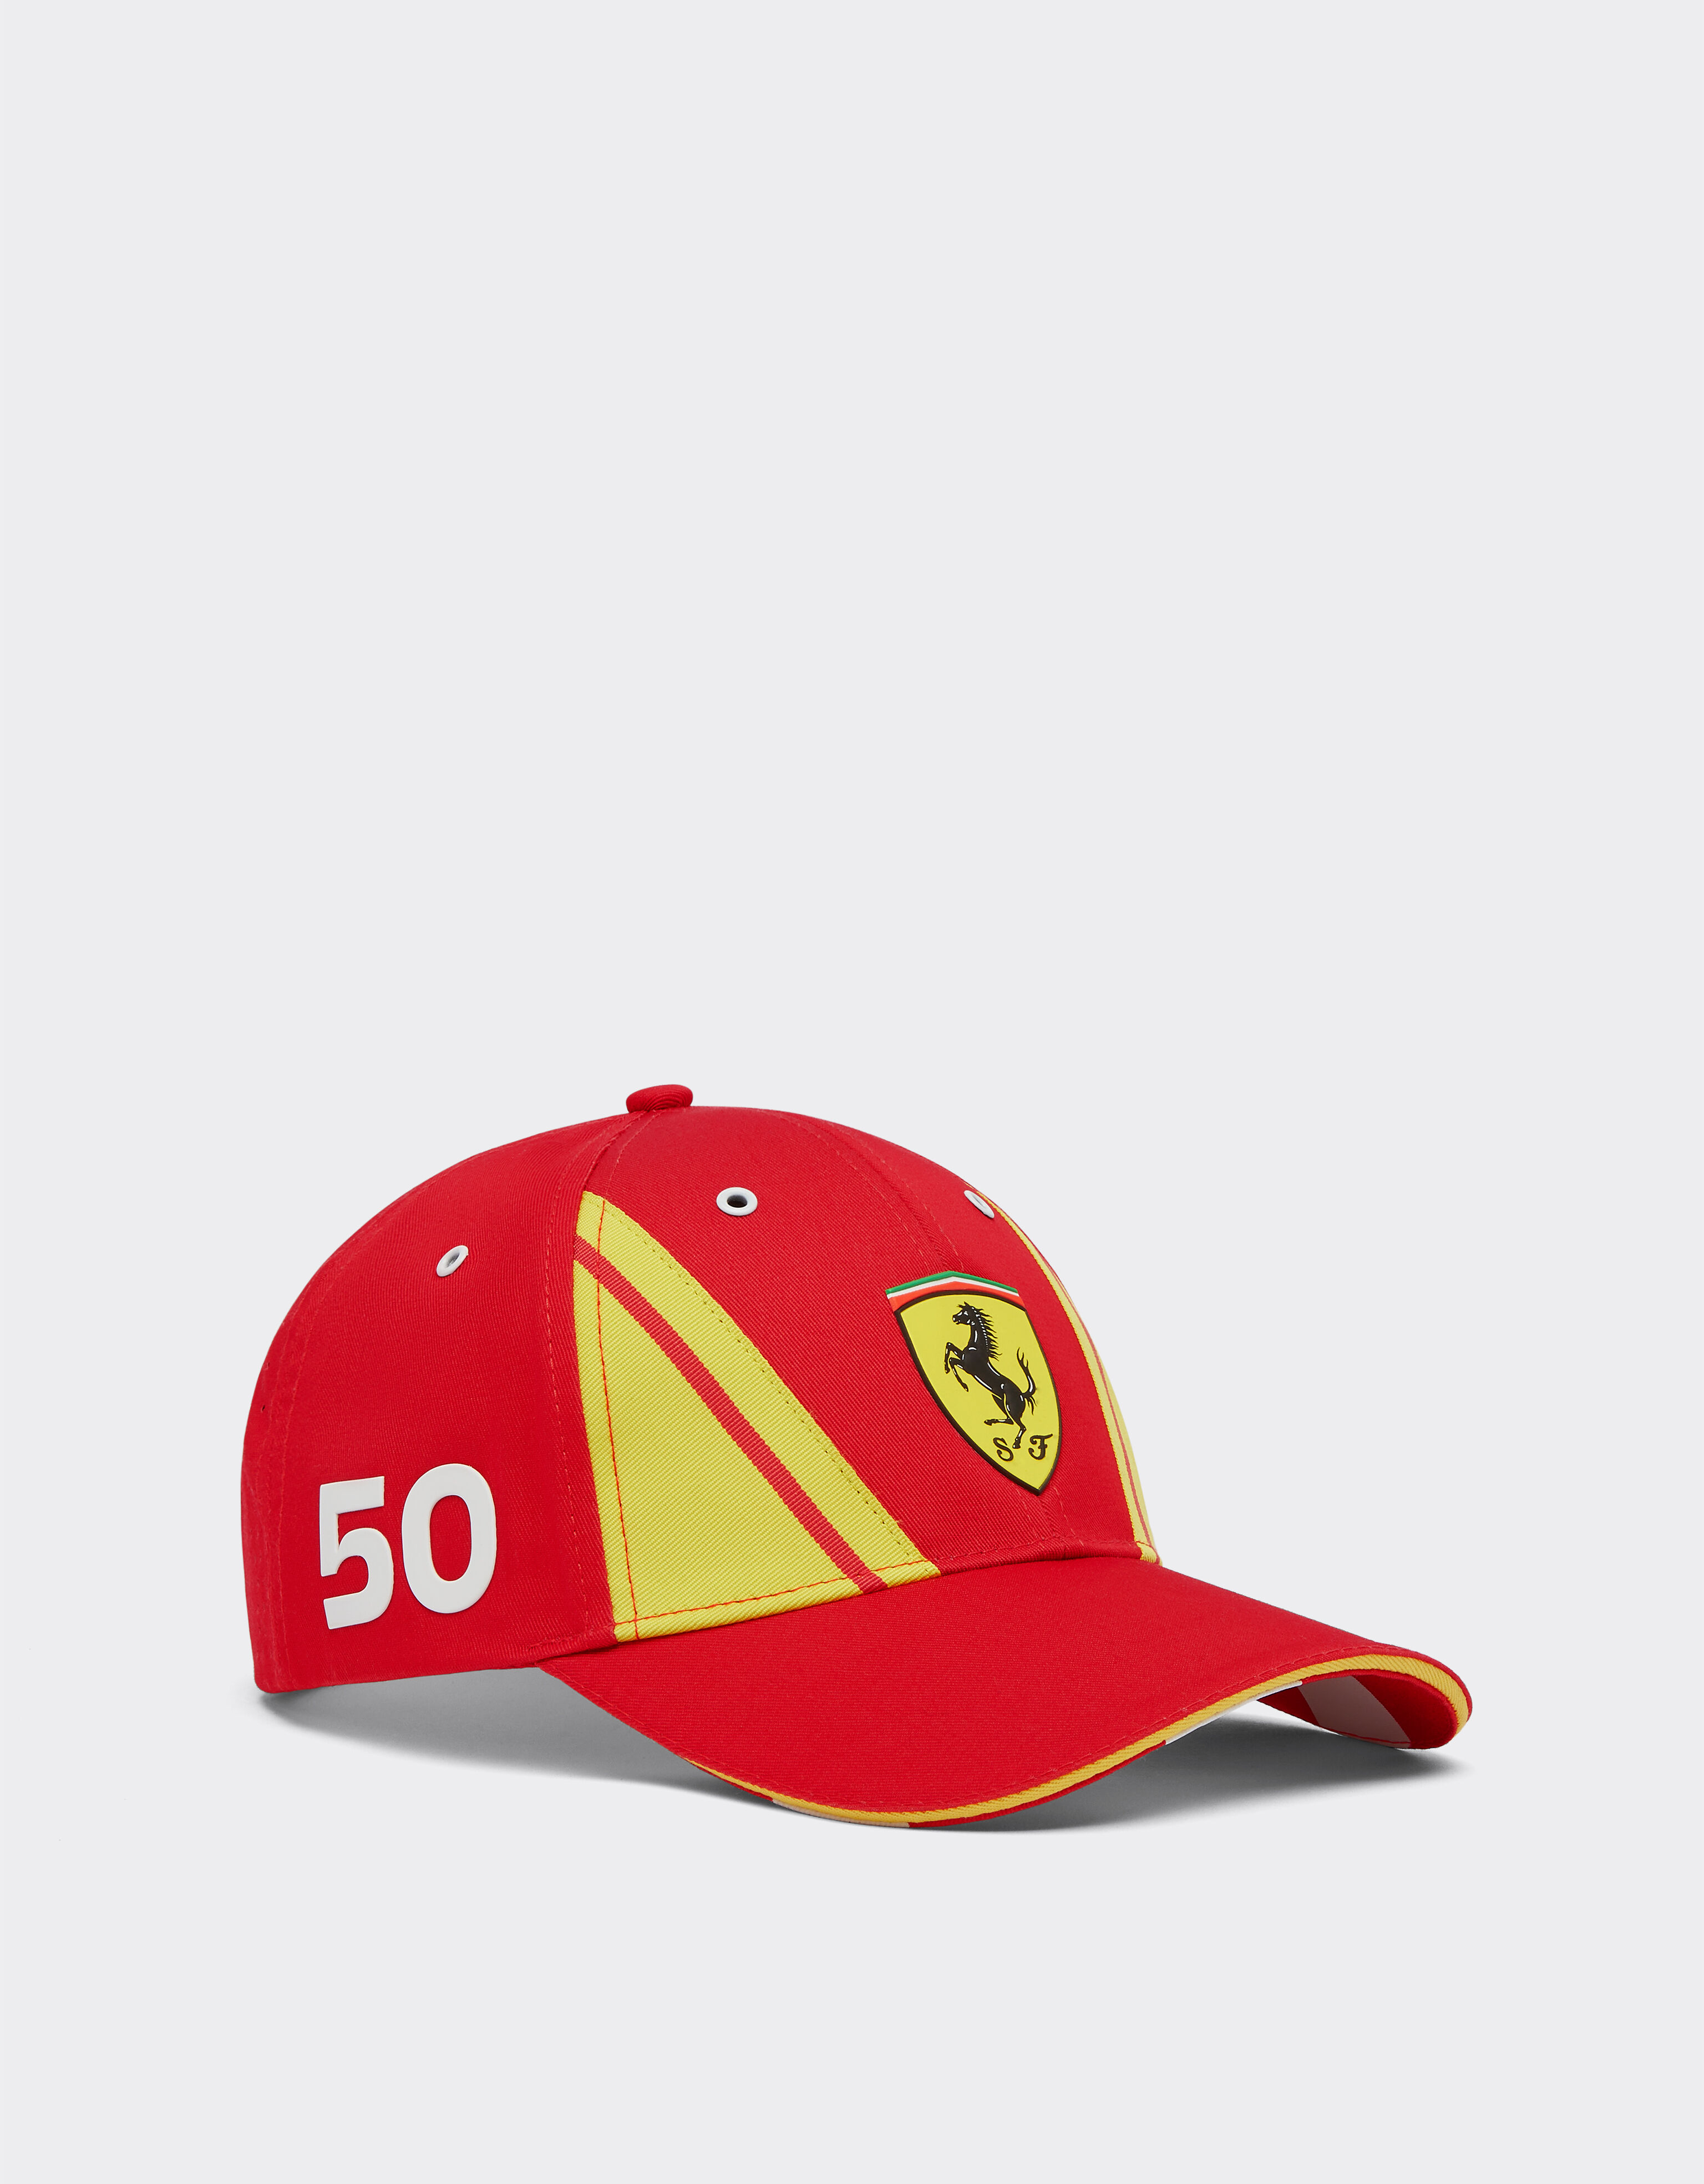 Ferrari Ferrari Nielsen Hypercar Hat - Limited Edition Red F1324f